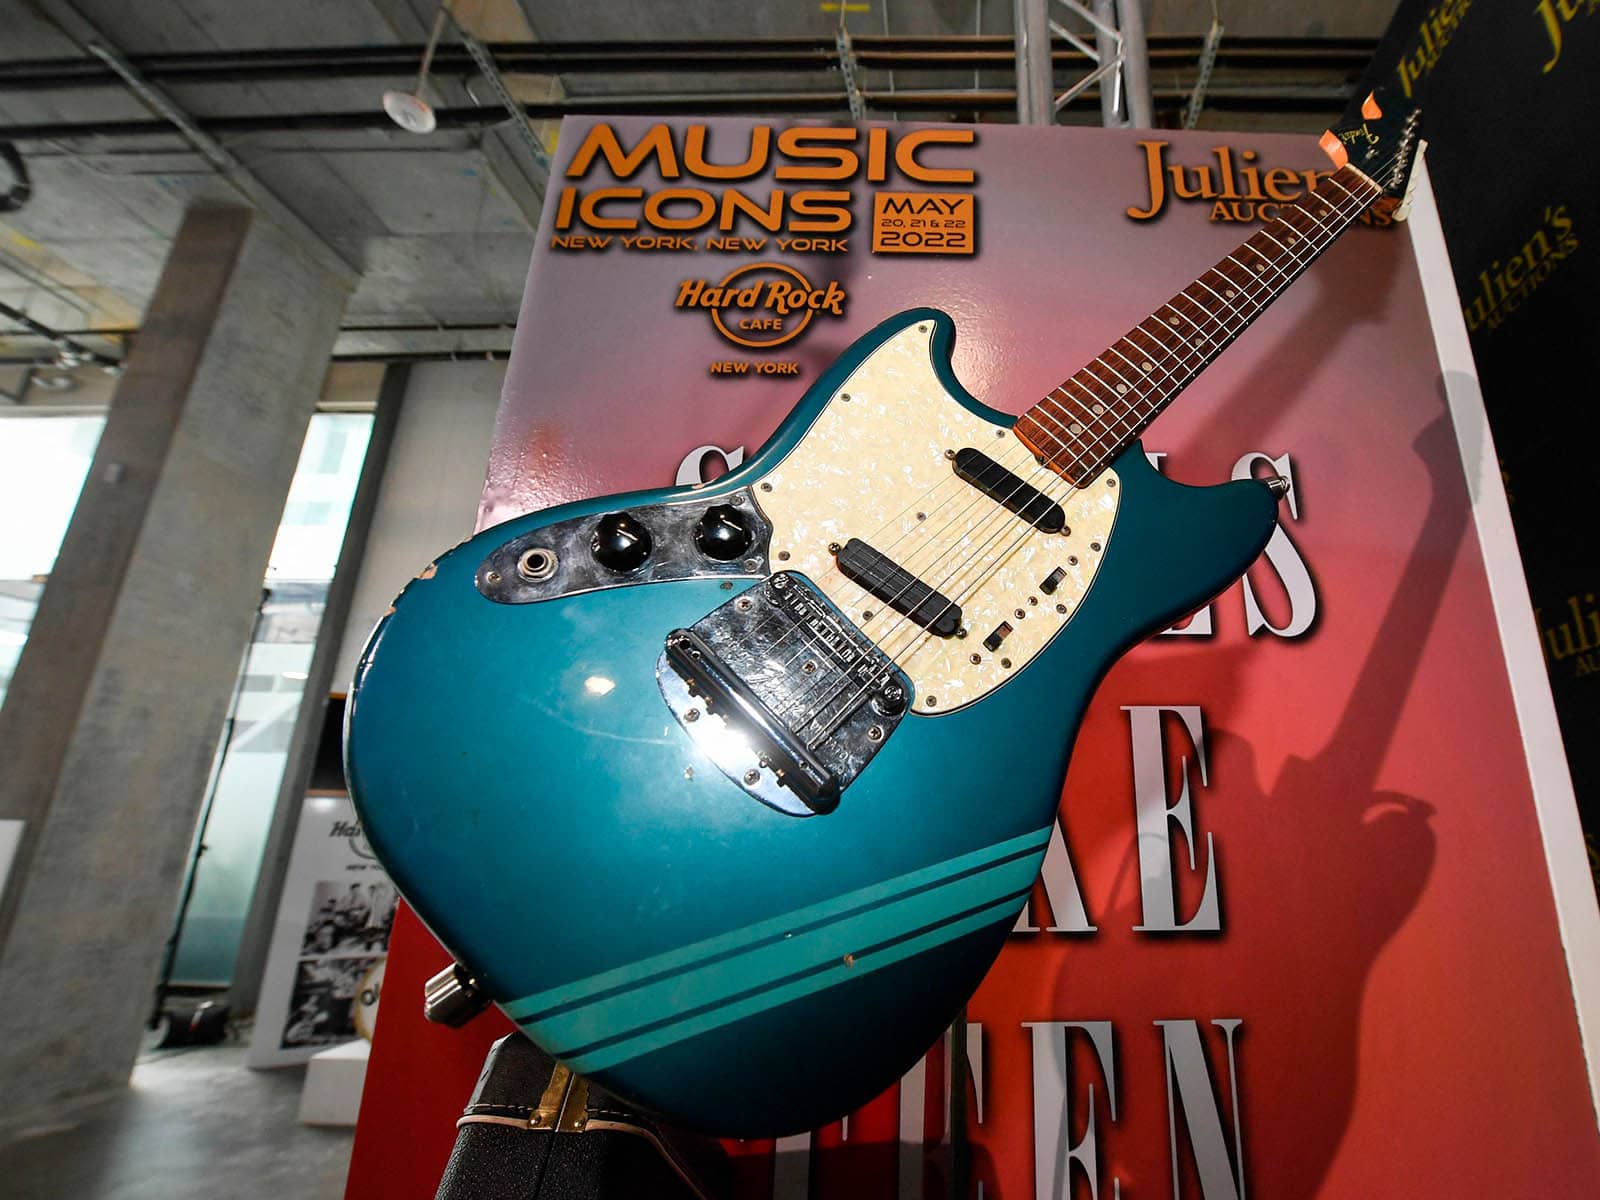 Sale a subasta la guitarra Fender Mustang de Kurt Cobain